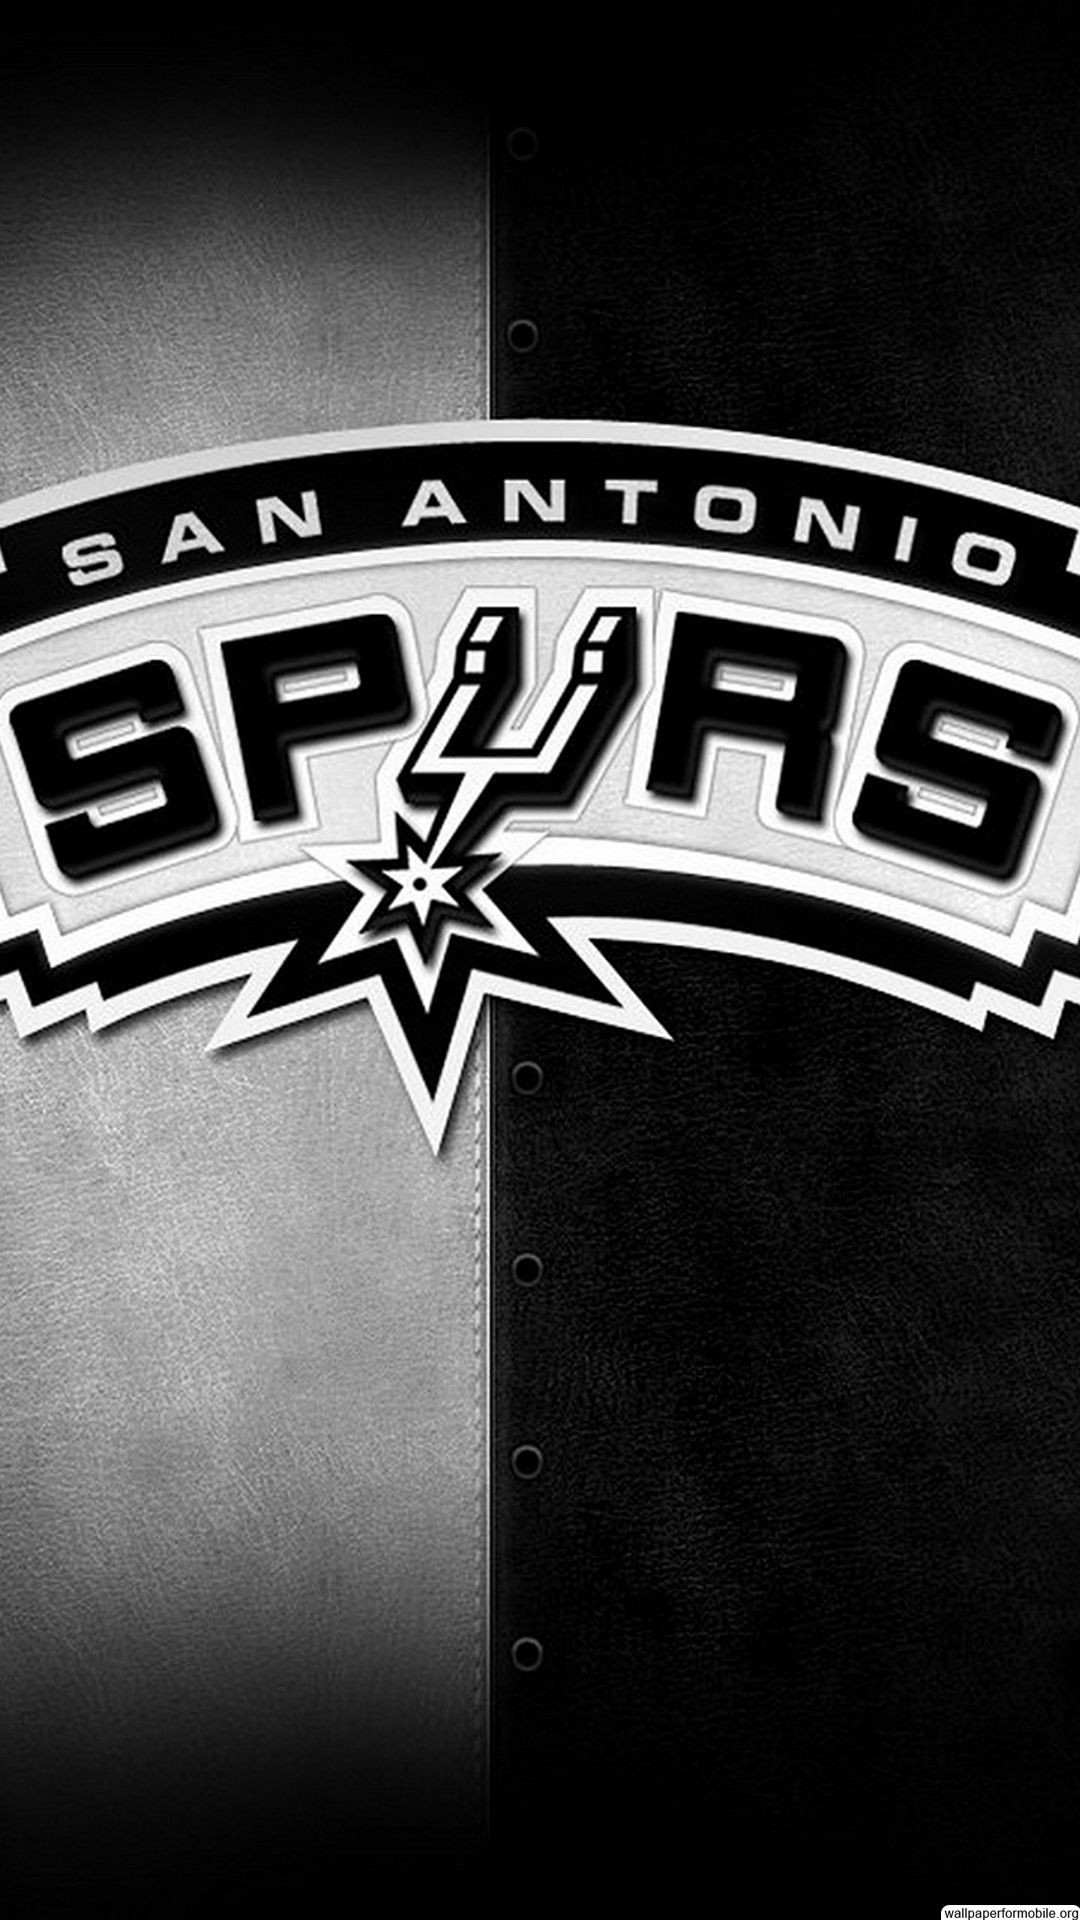 San Antonio Spurs Wallpaper 2018 (56+ images)1080 x 1920